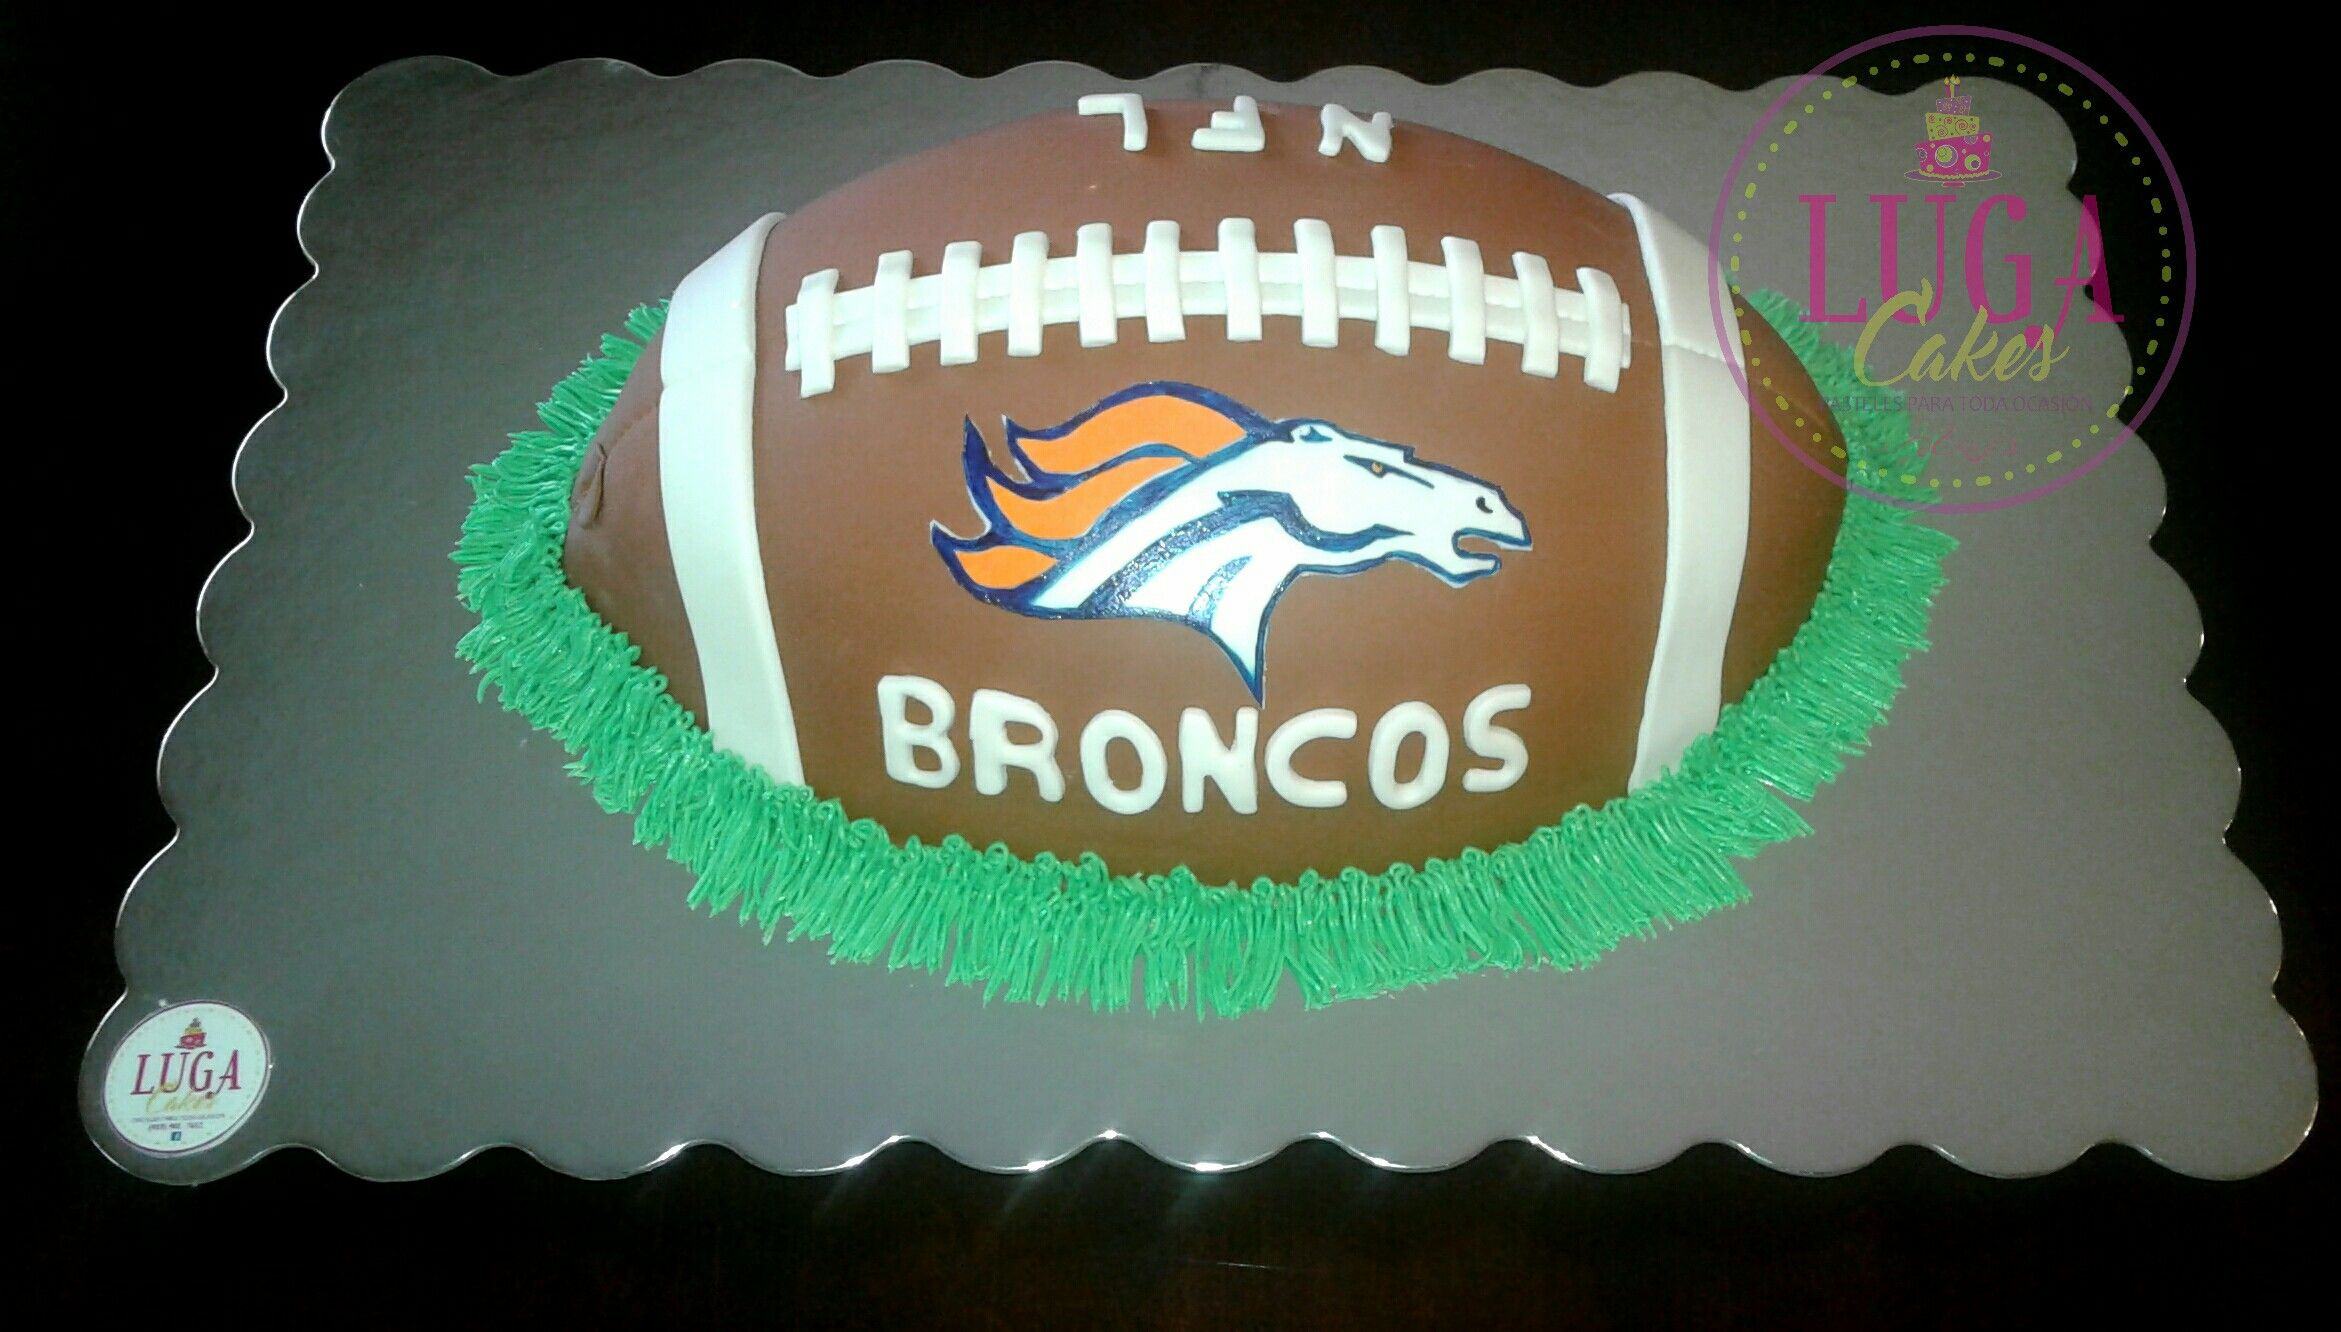 Denver Broncos Birthday Cake
 Denver Broncos Football Cake With images